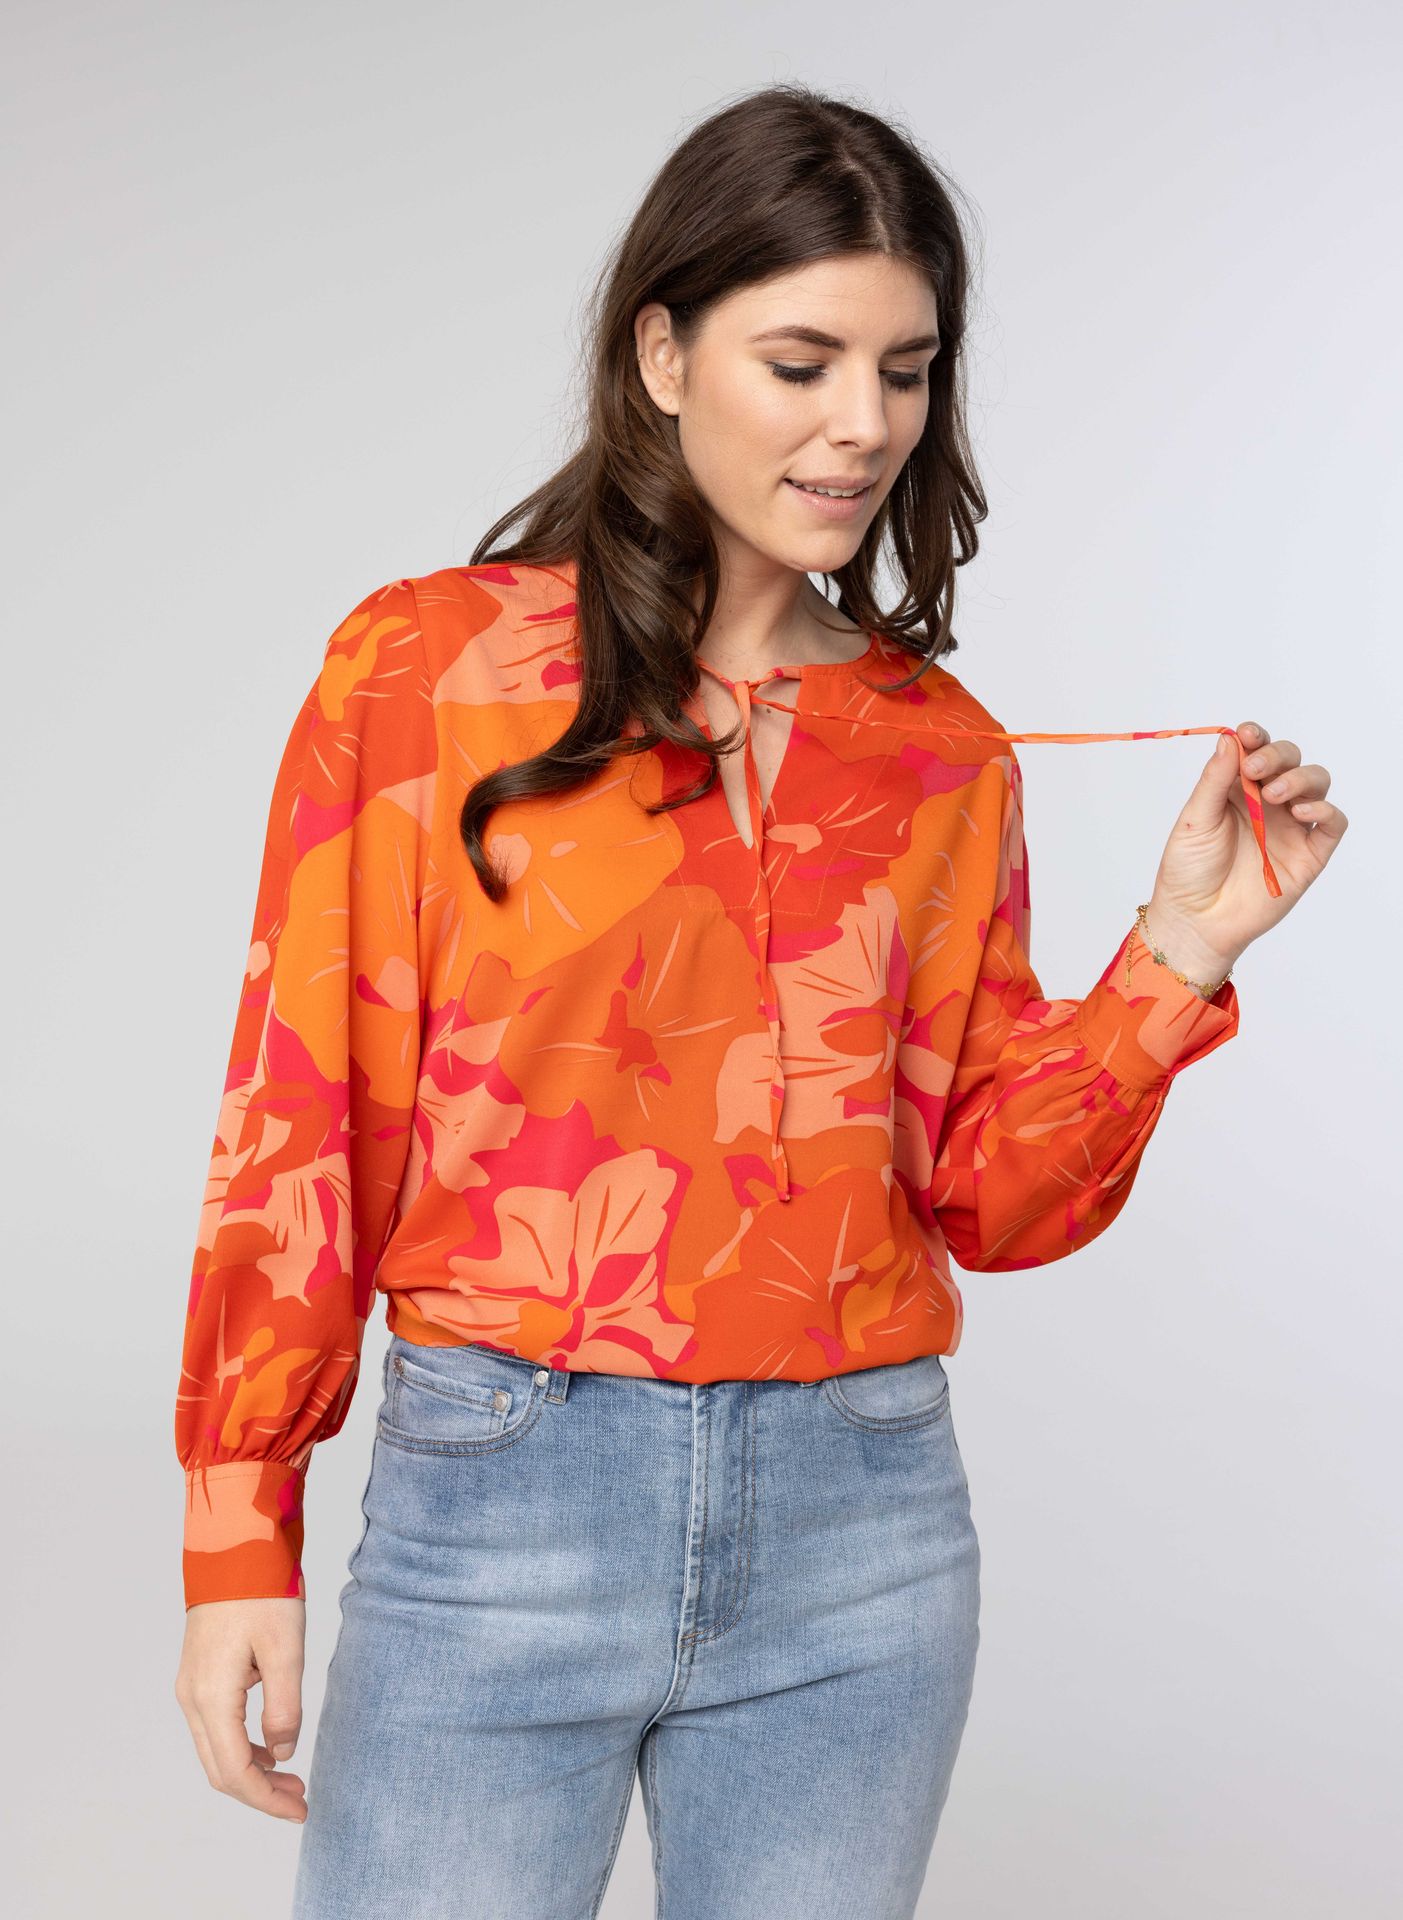 Norah Oranje blouse orange/pink 213735-739